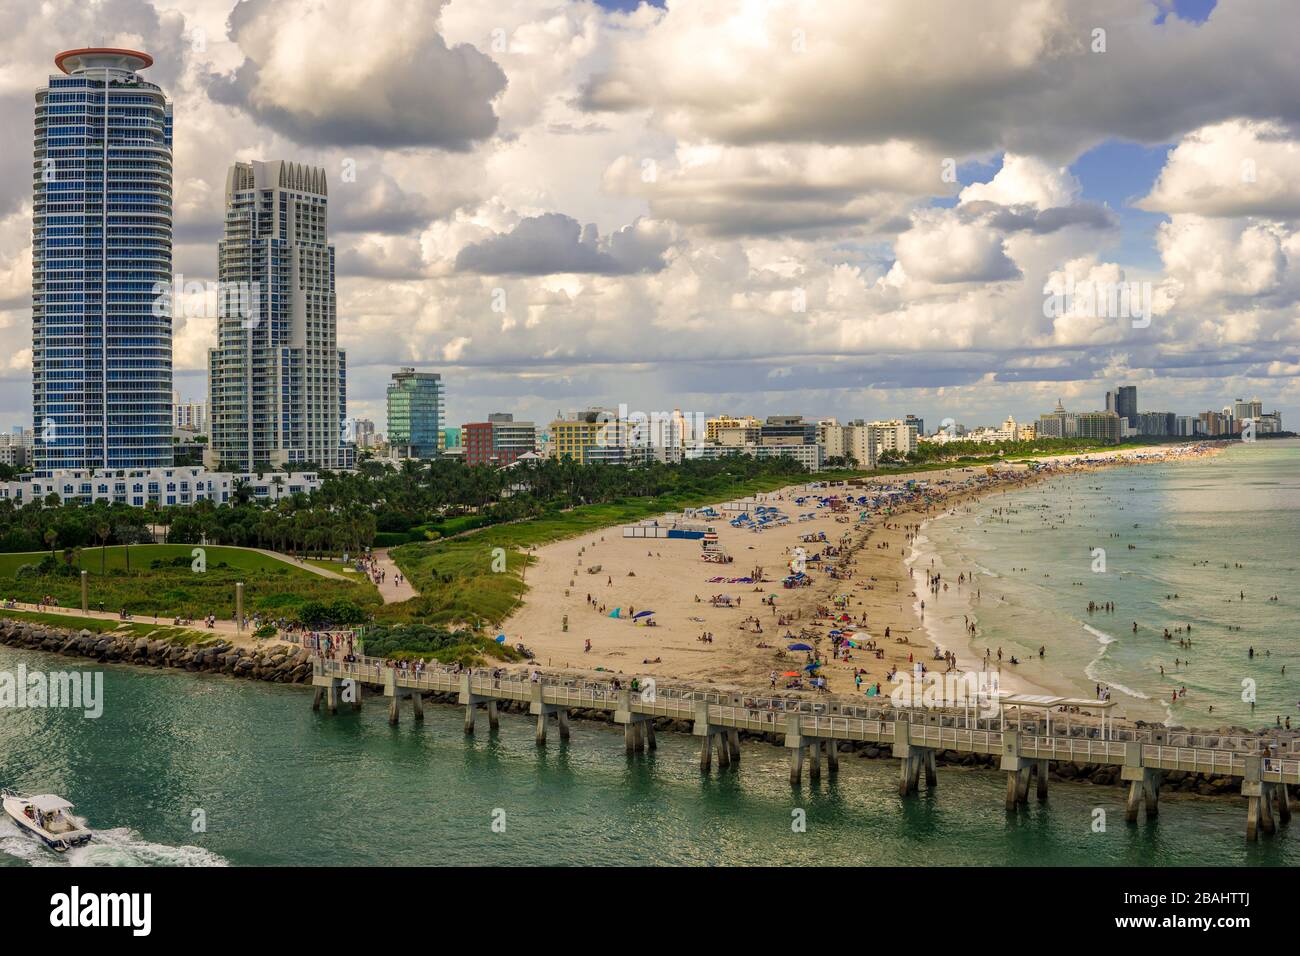 Voie navigable intercôtière partant du port de Miami avec les gratte-ciel de la ville en arrière-plan. Grand marché d'importation pour le commerce américain. Banque D'Images